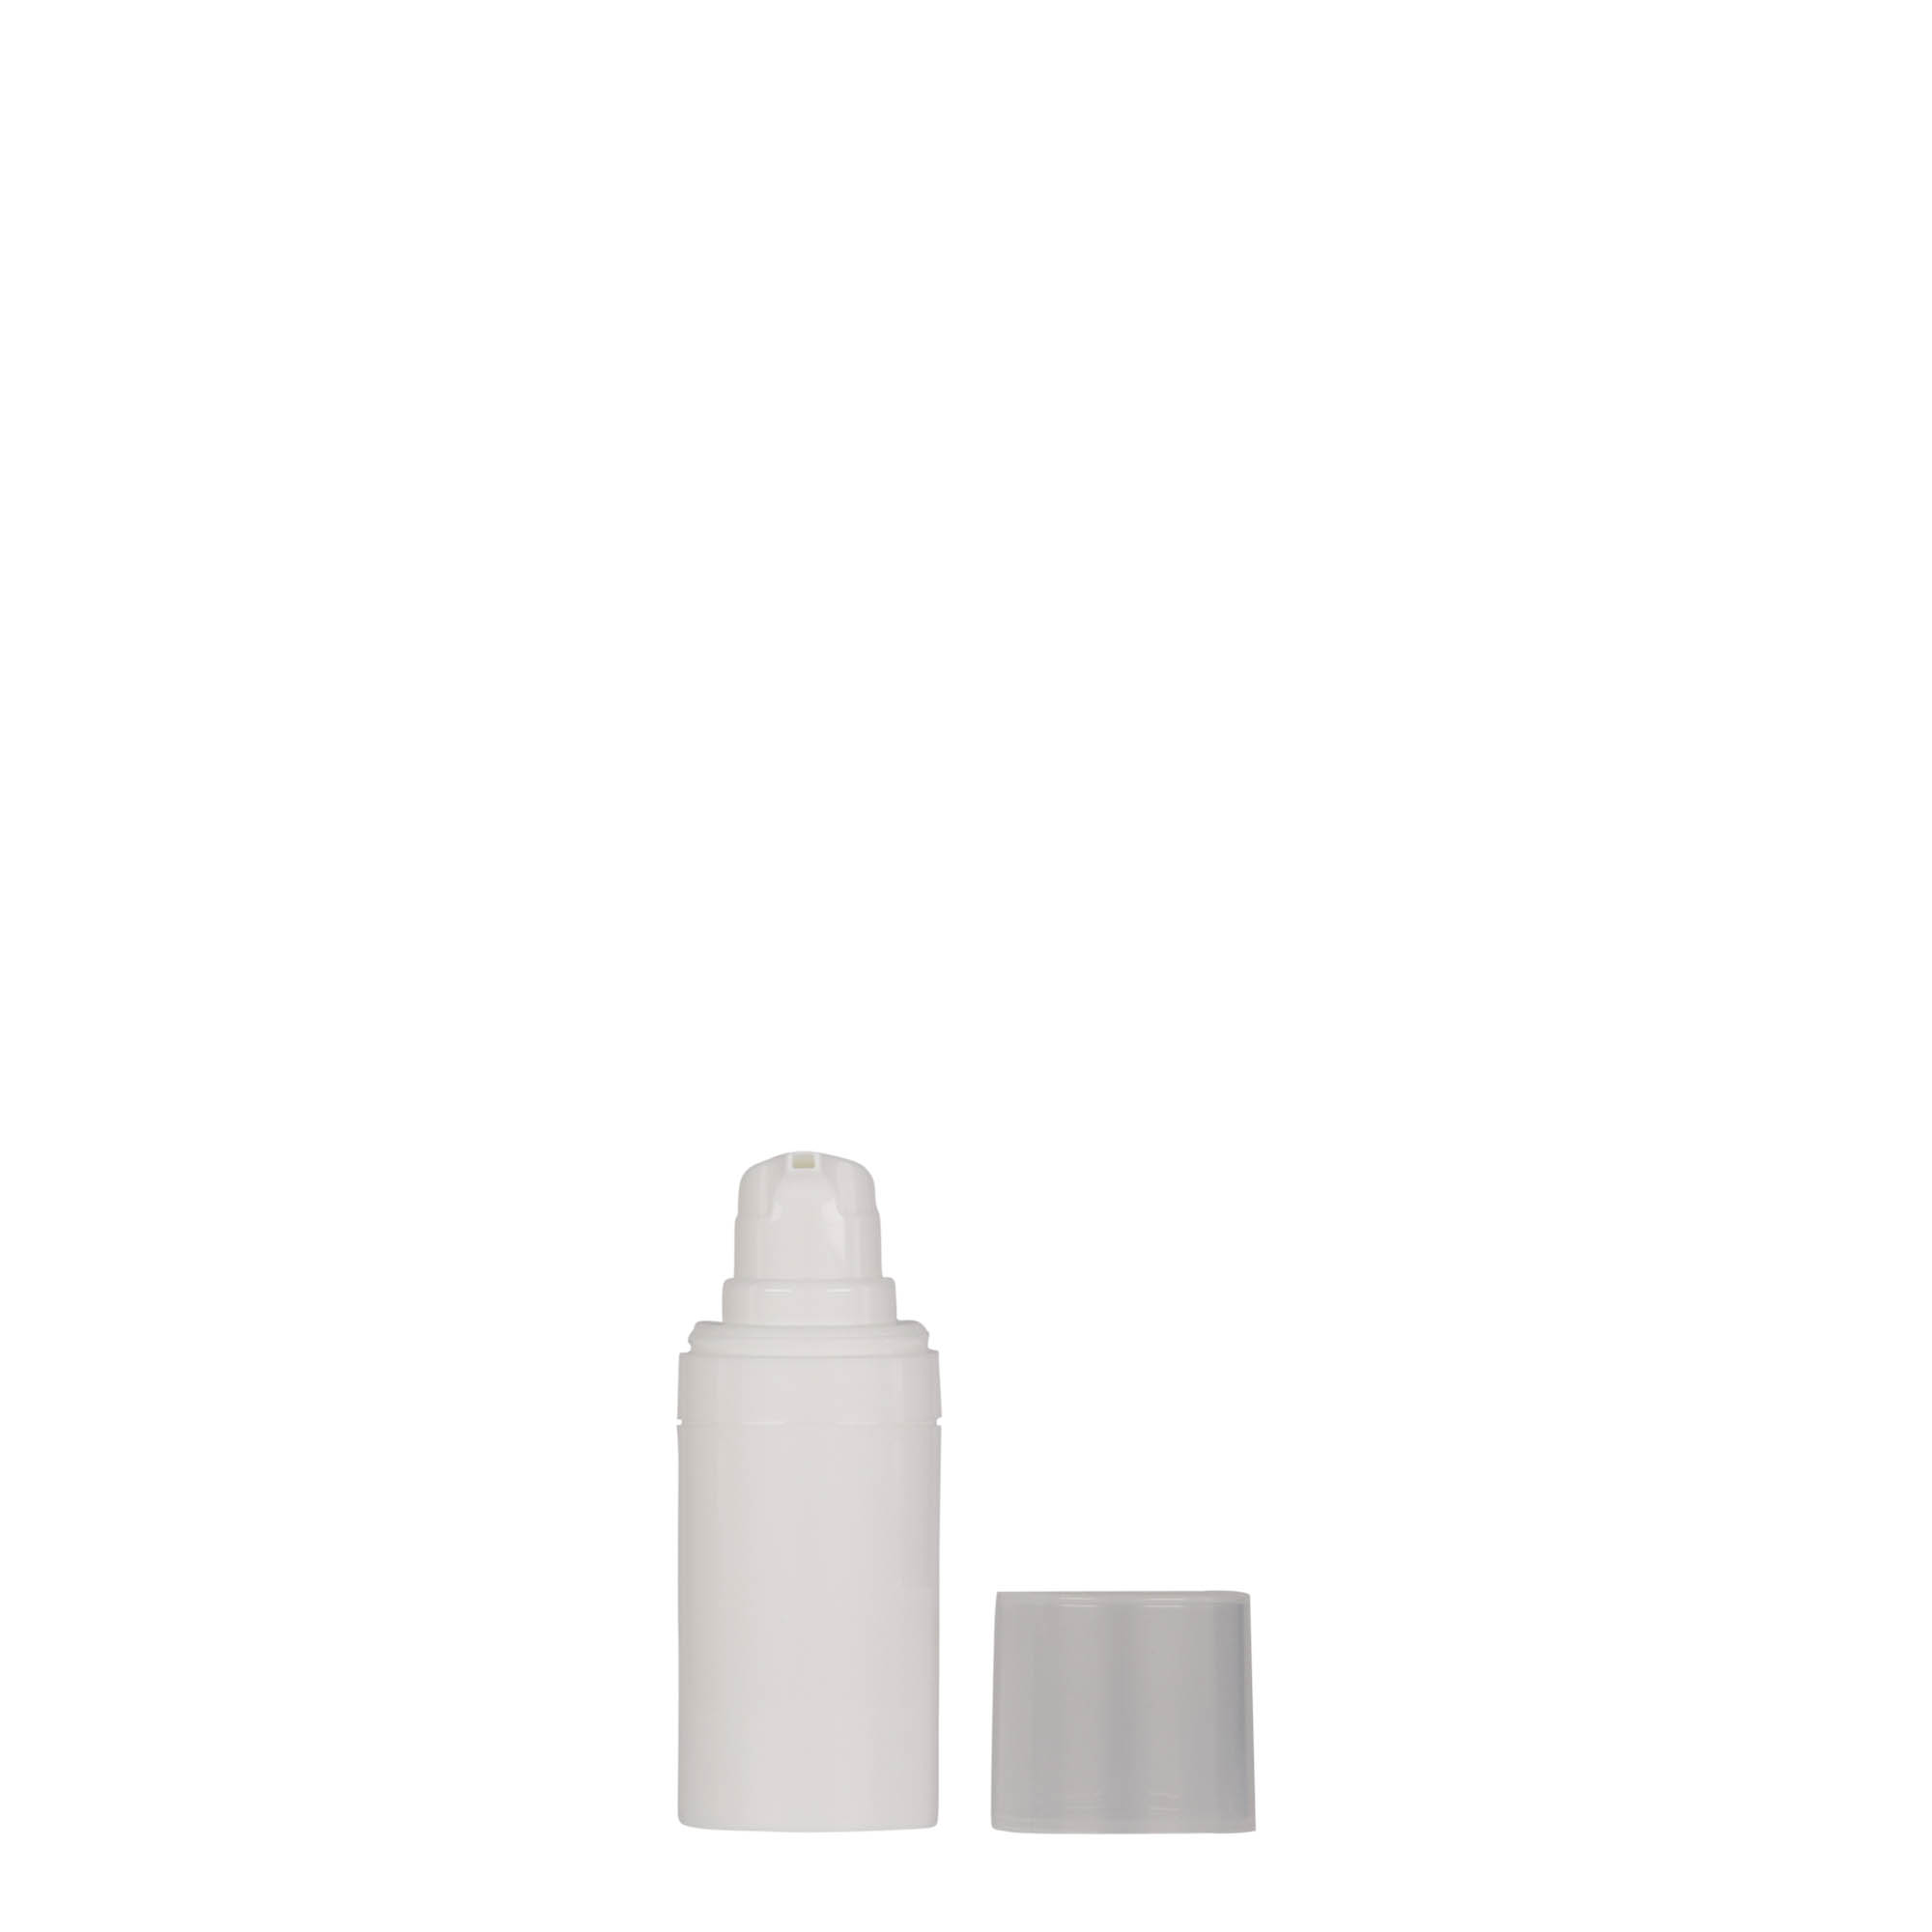 15 ml dozownik airless 'Micro', tworzywo sztuczne PP, kolor biały